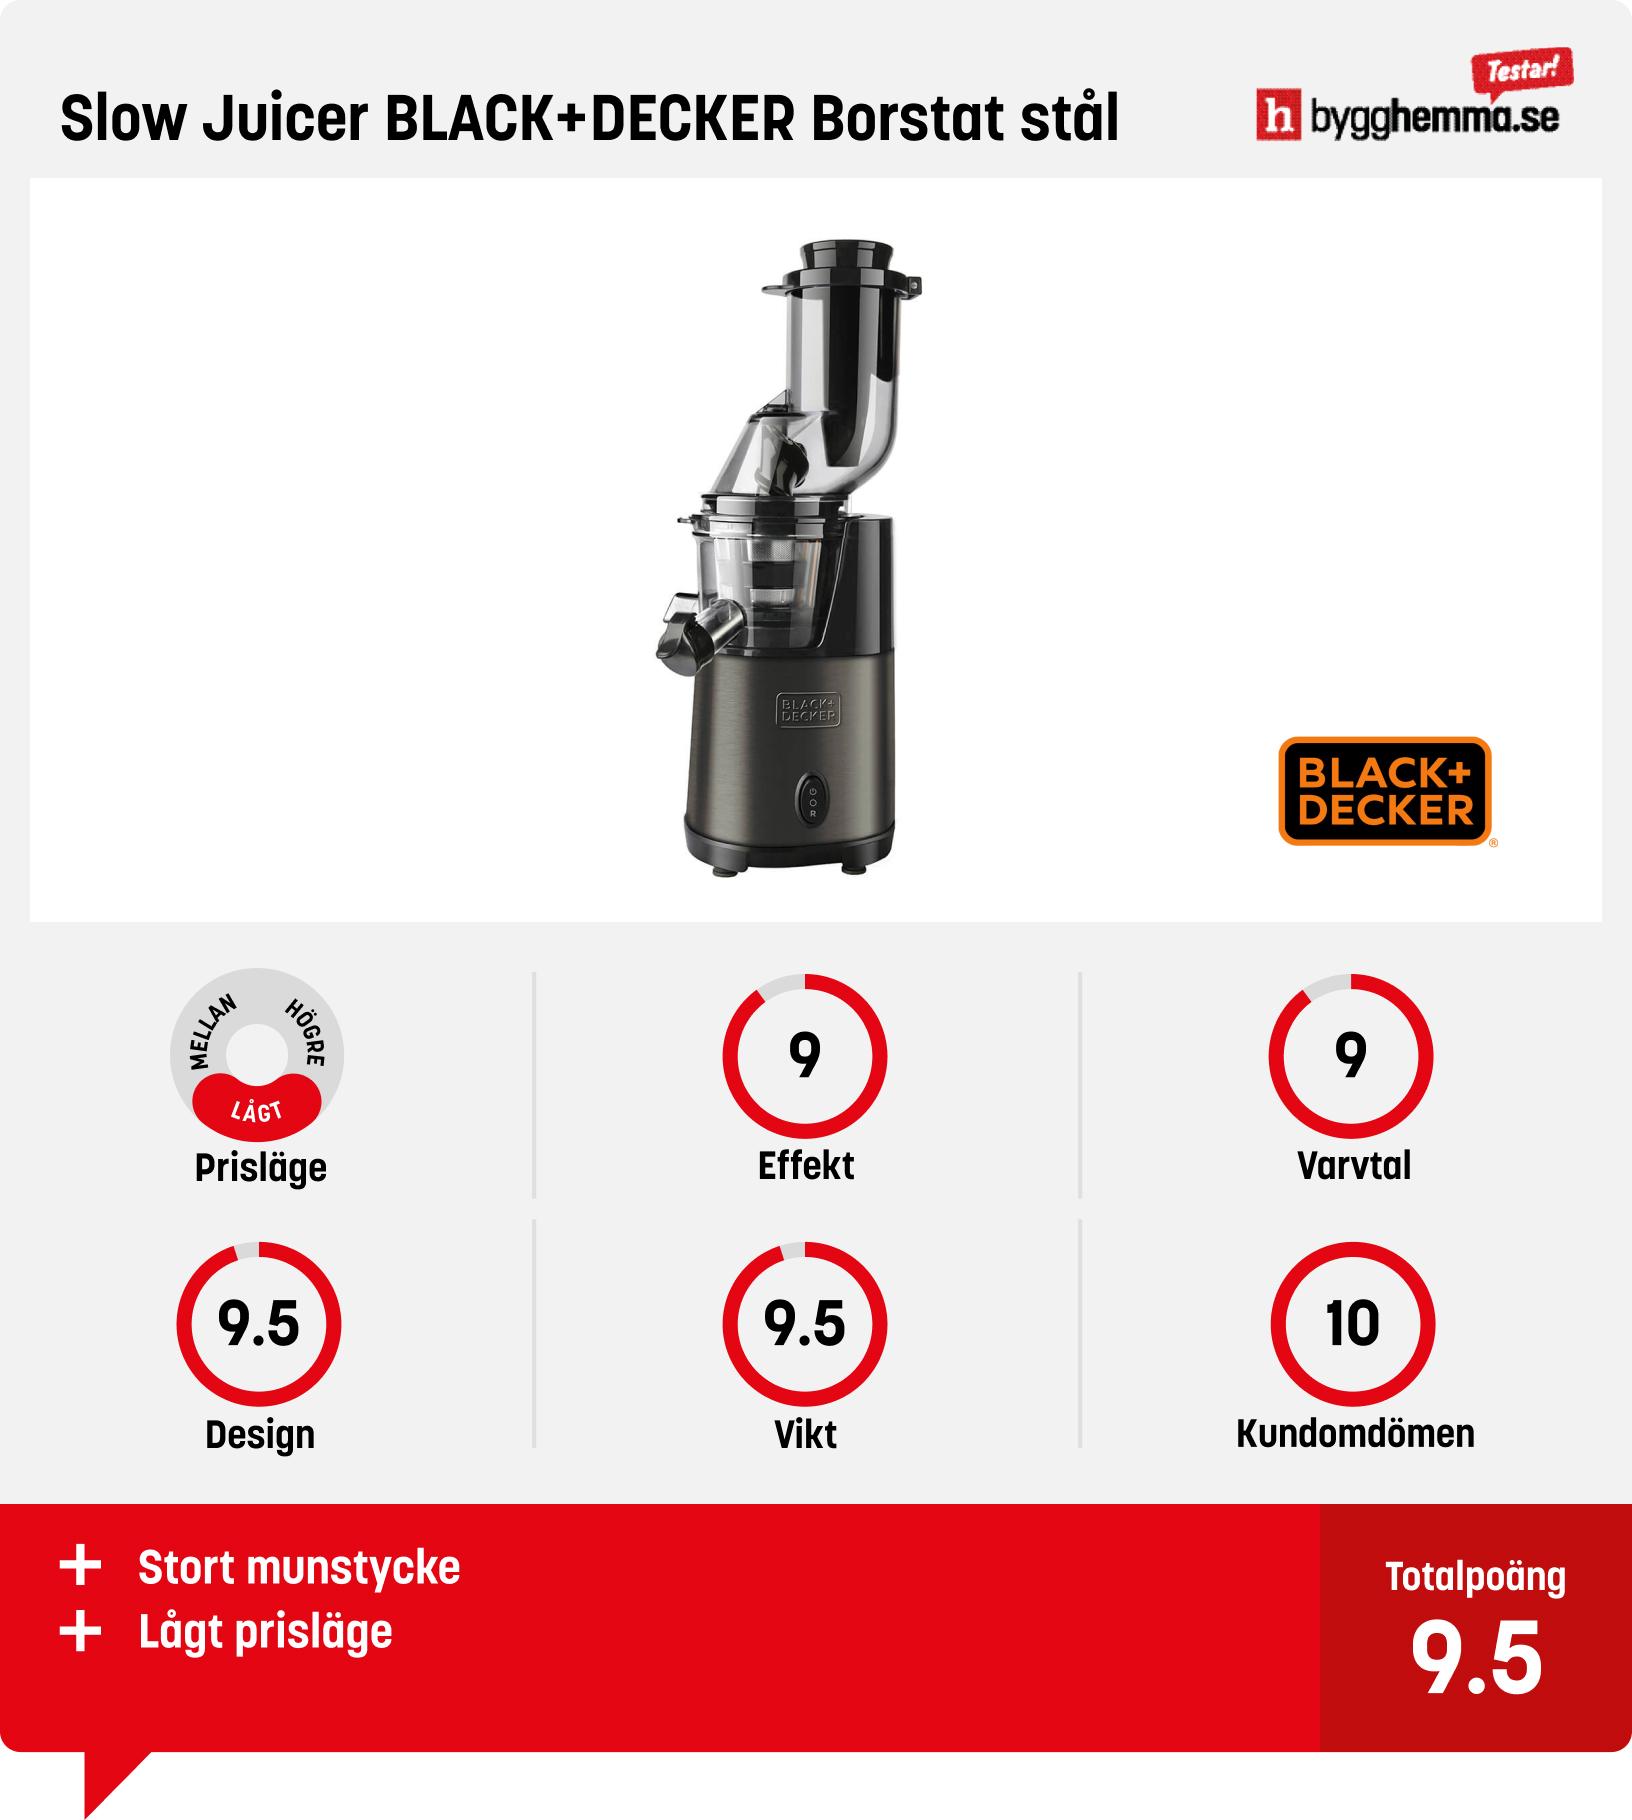 Slowjuicer bäst i test - Slow Juicer BLACK+DECKER Borstat stål